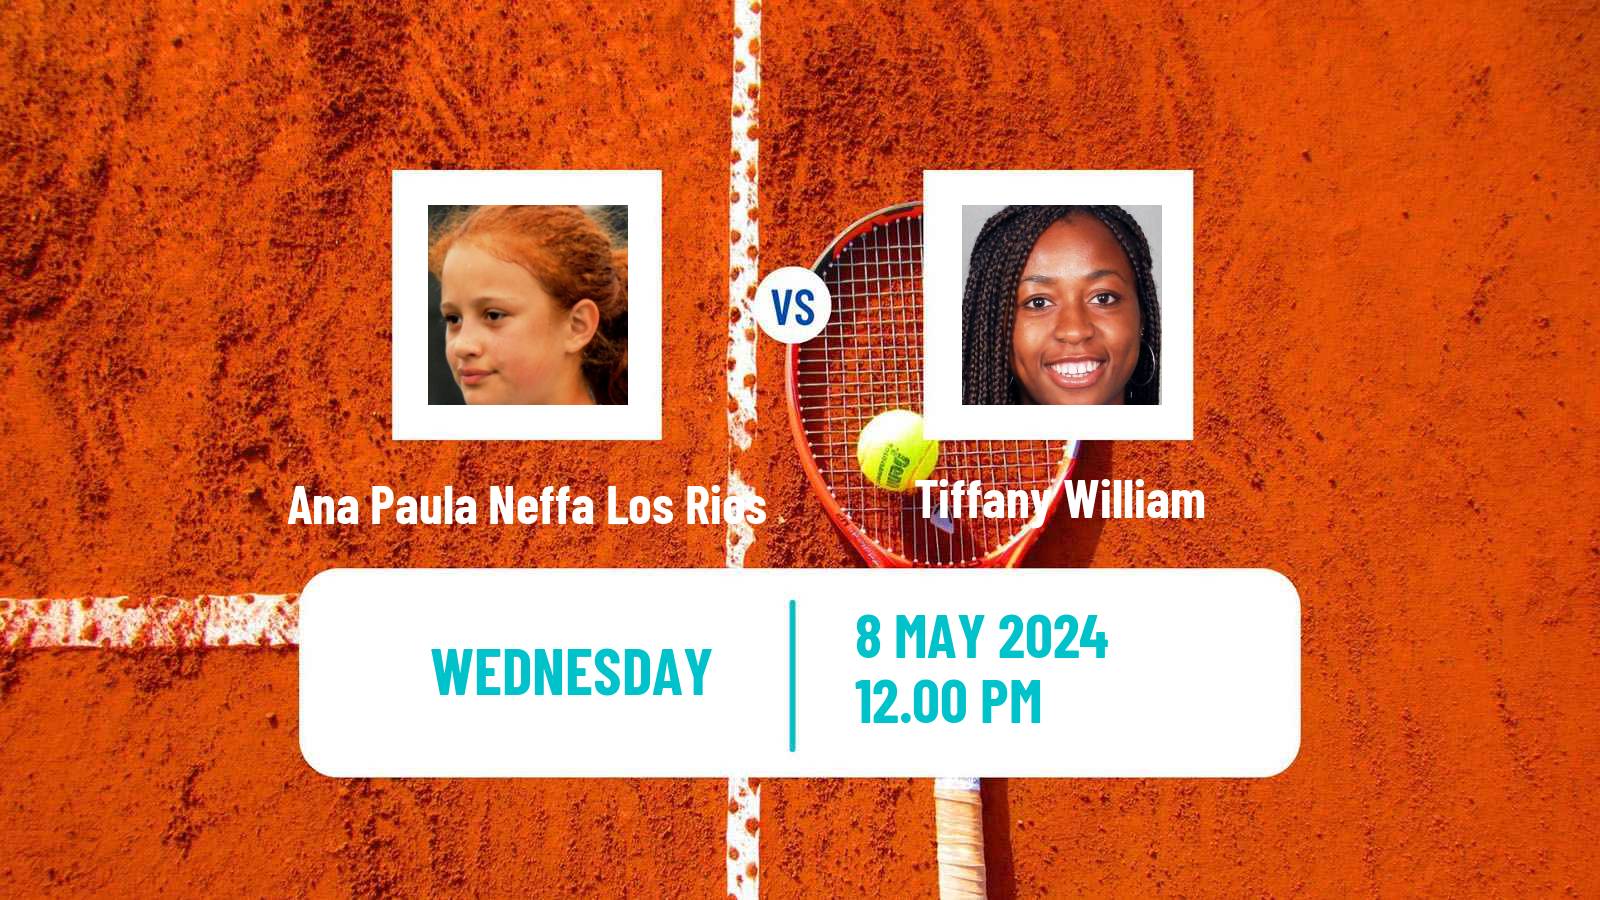 Tennis ITF W35 Sopo Women Ana Paula Neffa Los Rios - Tiffany William